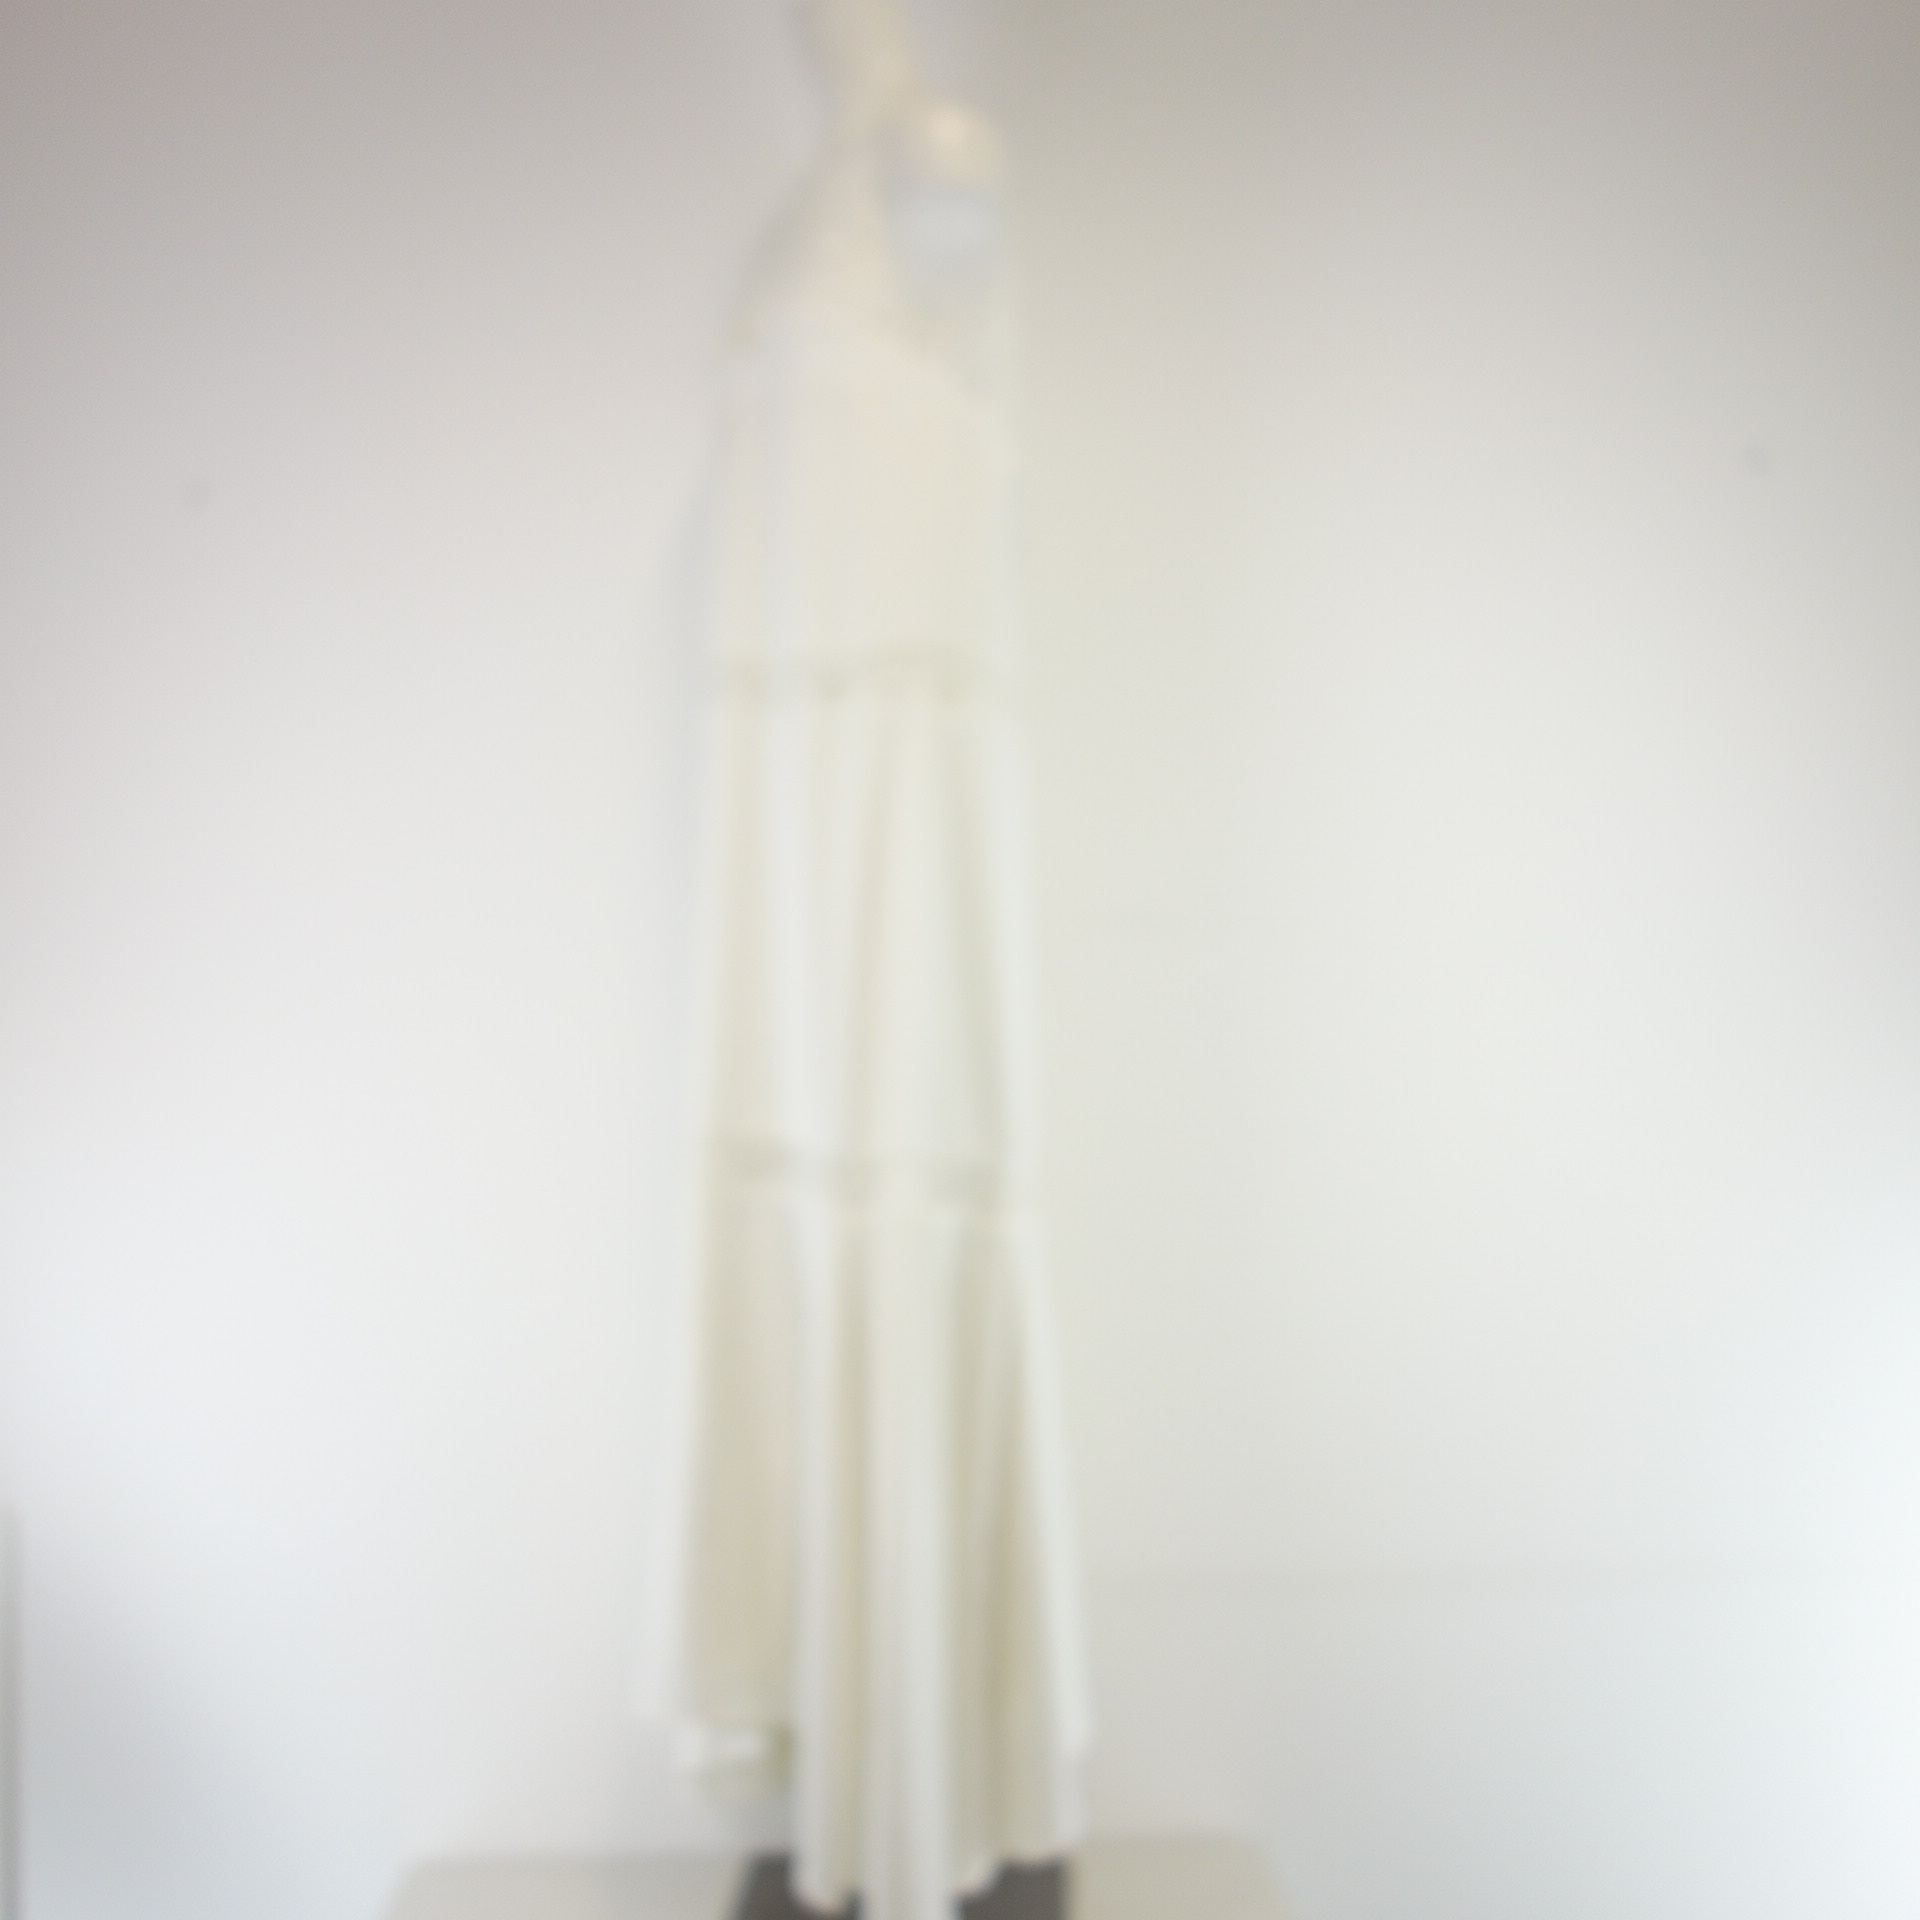 THEORY Damen Langes Kleid Maxikleid Weiß Hängerchen Spaghetti Träger Ibiza Style